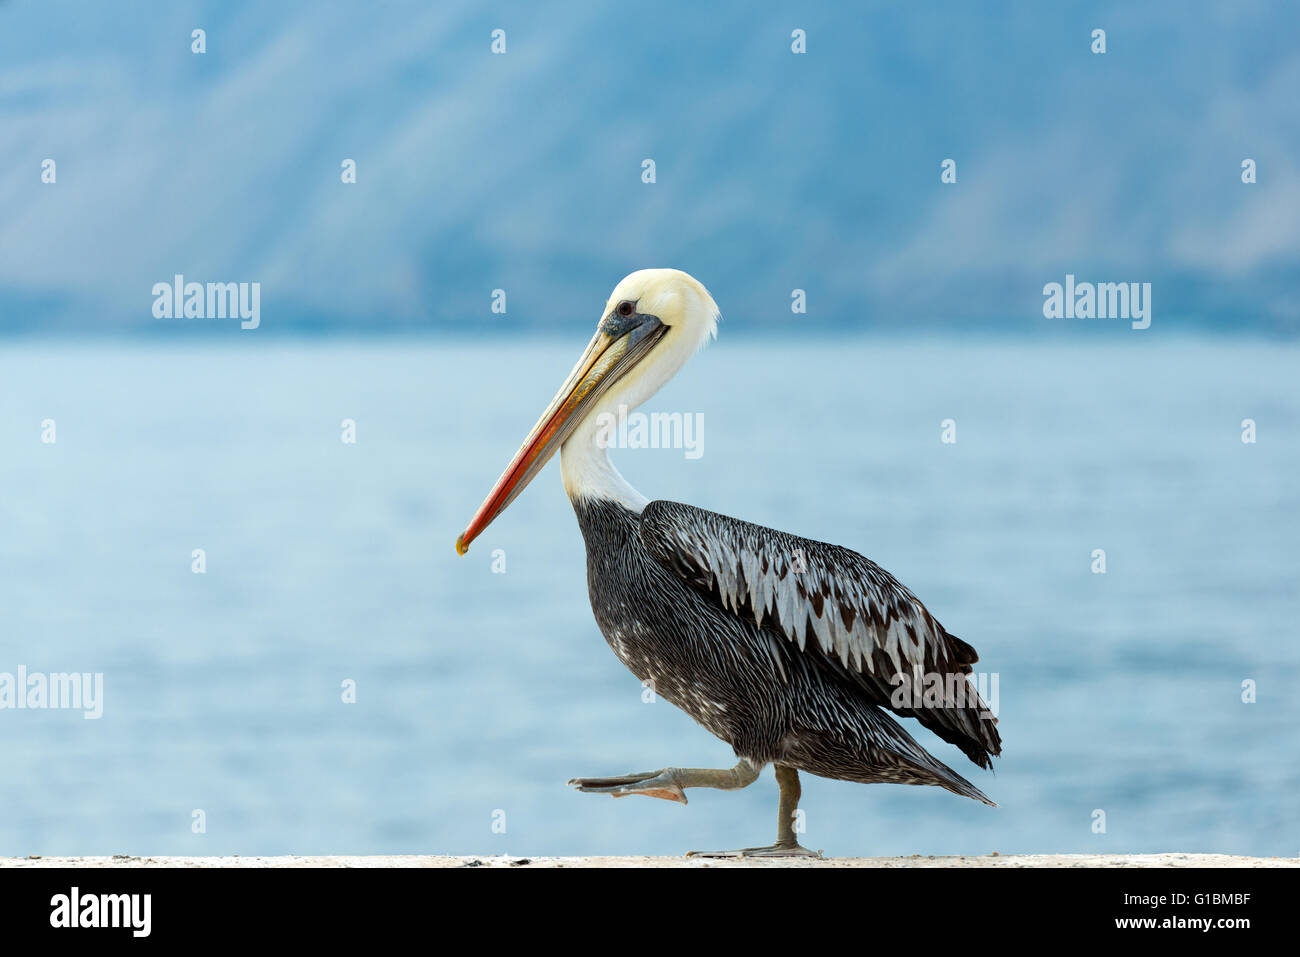 Wild Pelican in Chile Stock Photo